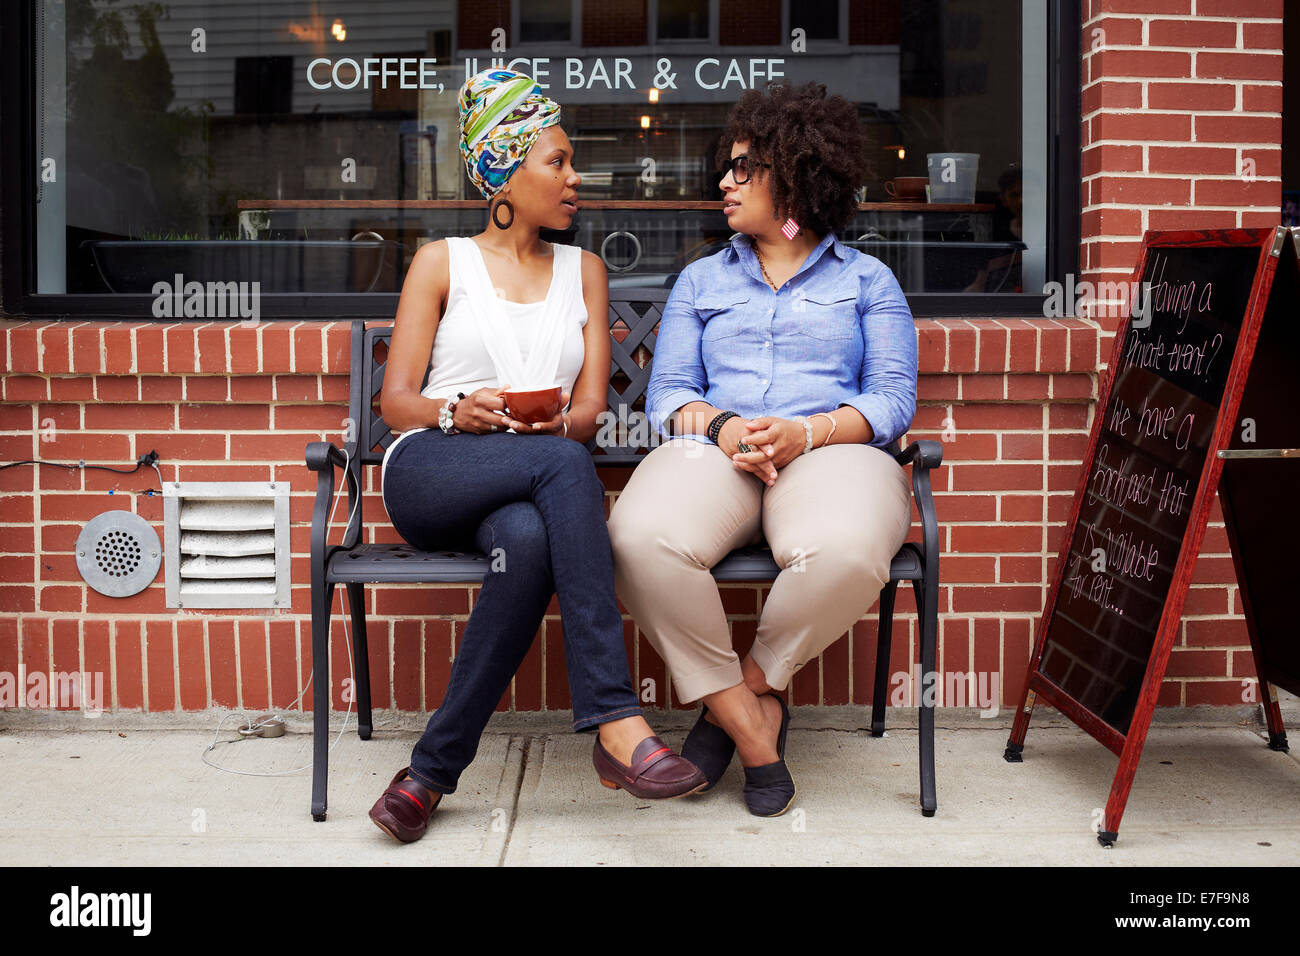 Women talking outside coffee shop on city street Stock Photo